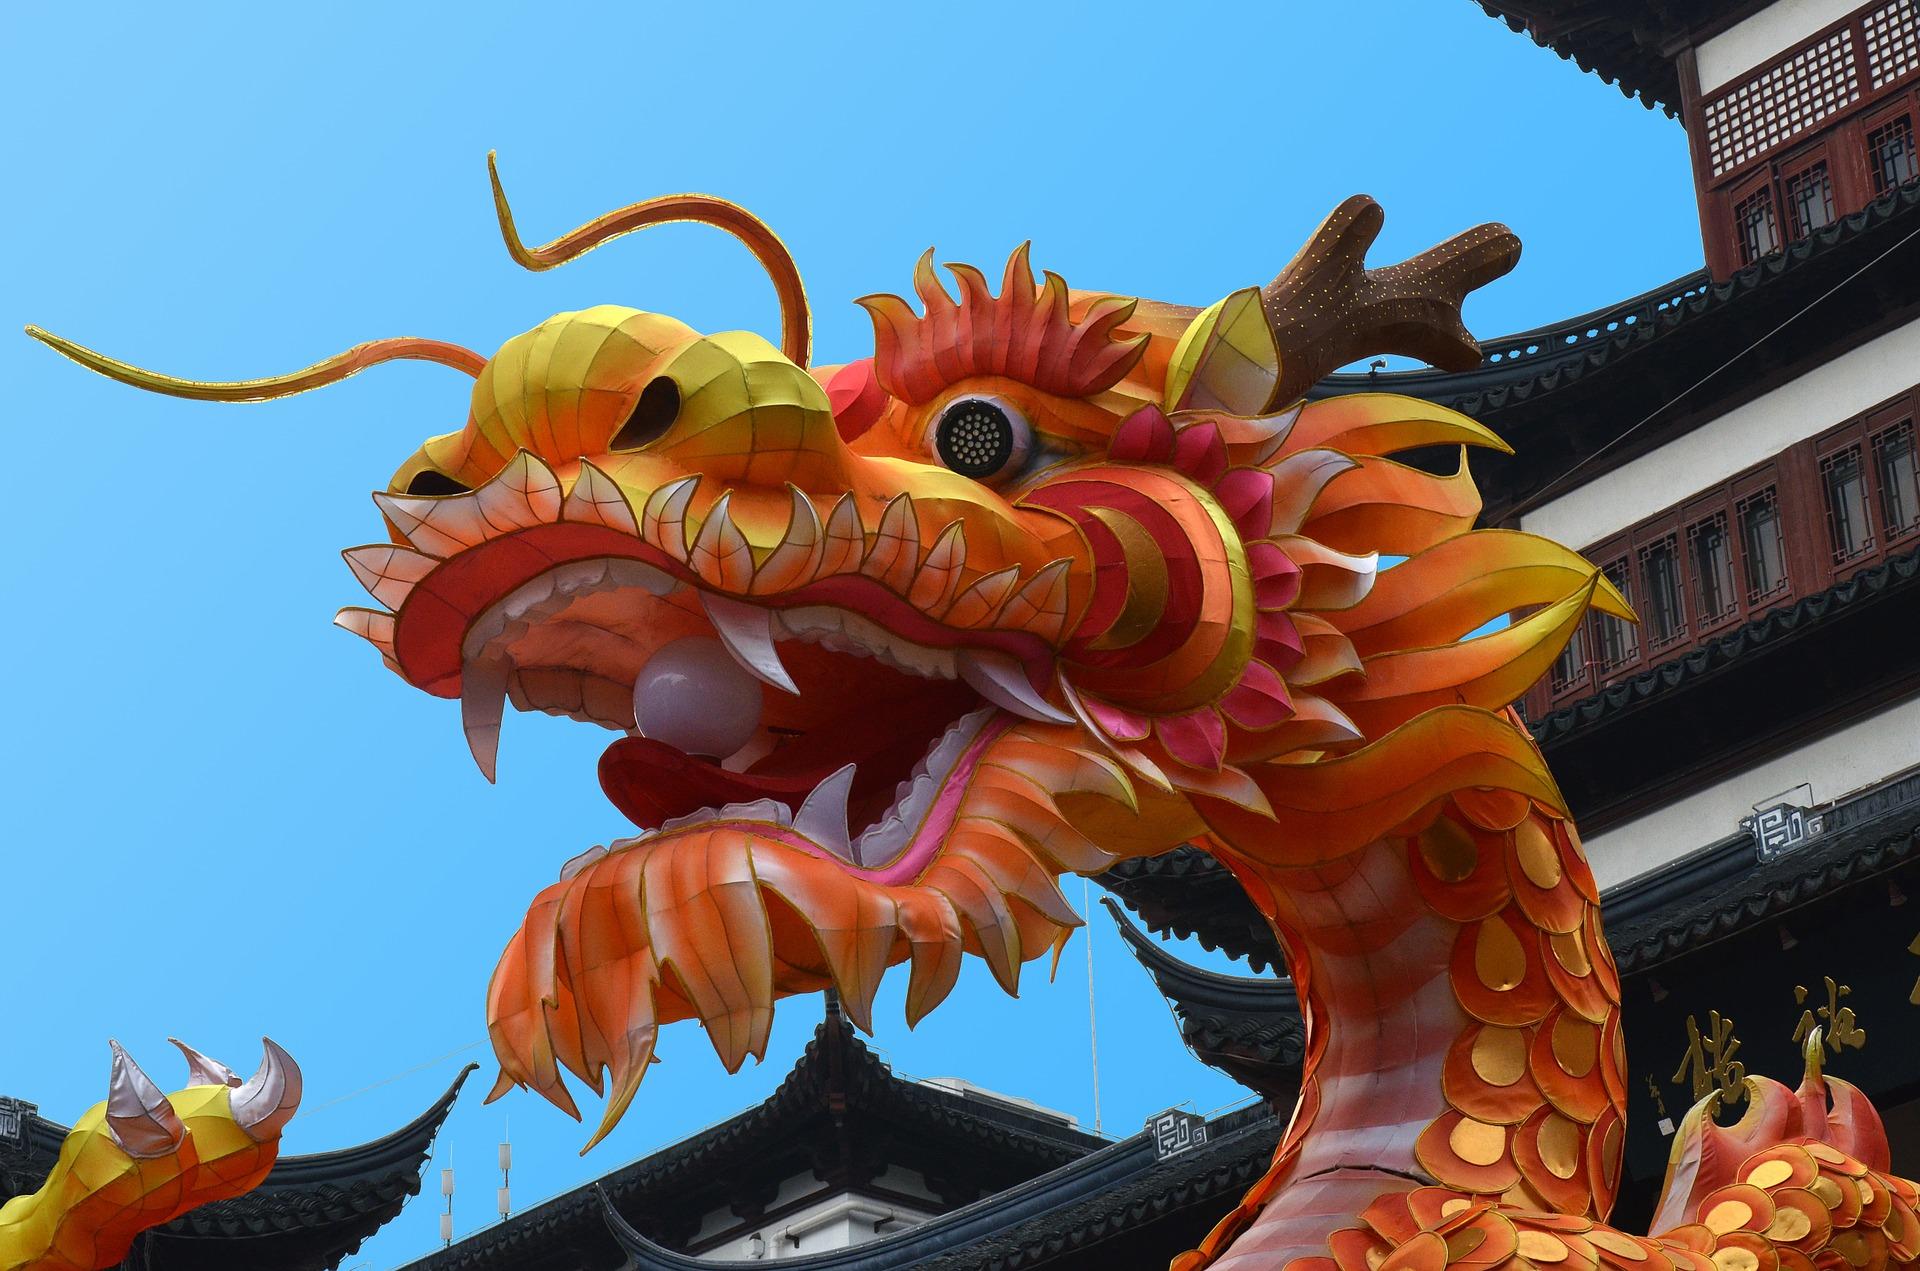 Double Dragon & China hacken unsere Forschungsergebnisse